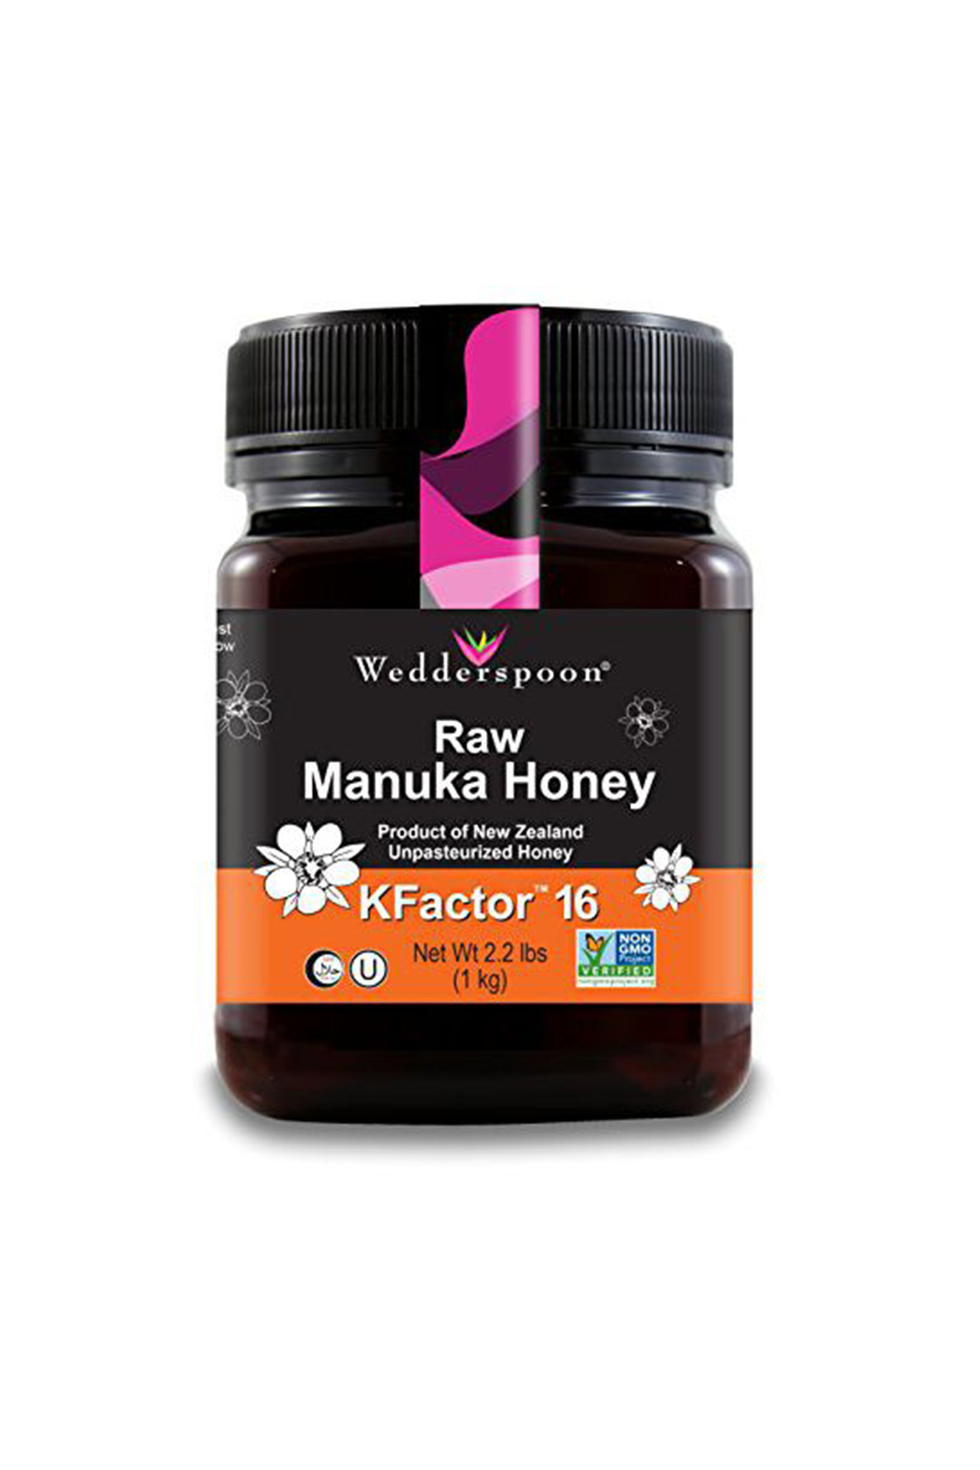 Raw Premium Manuka Honey